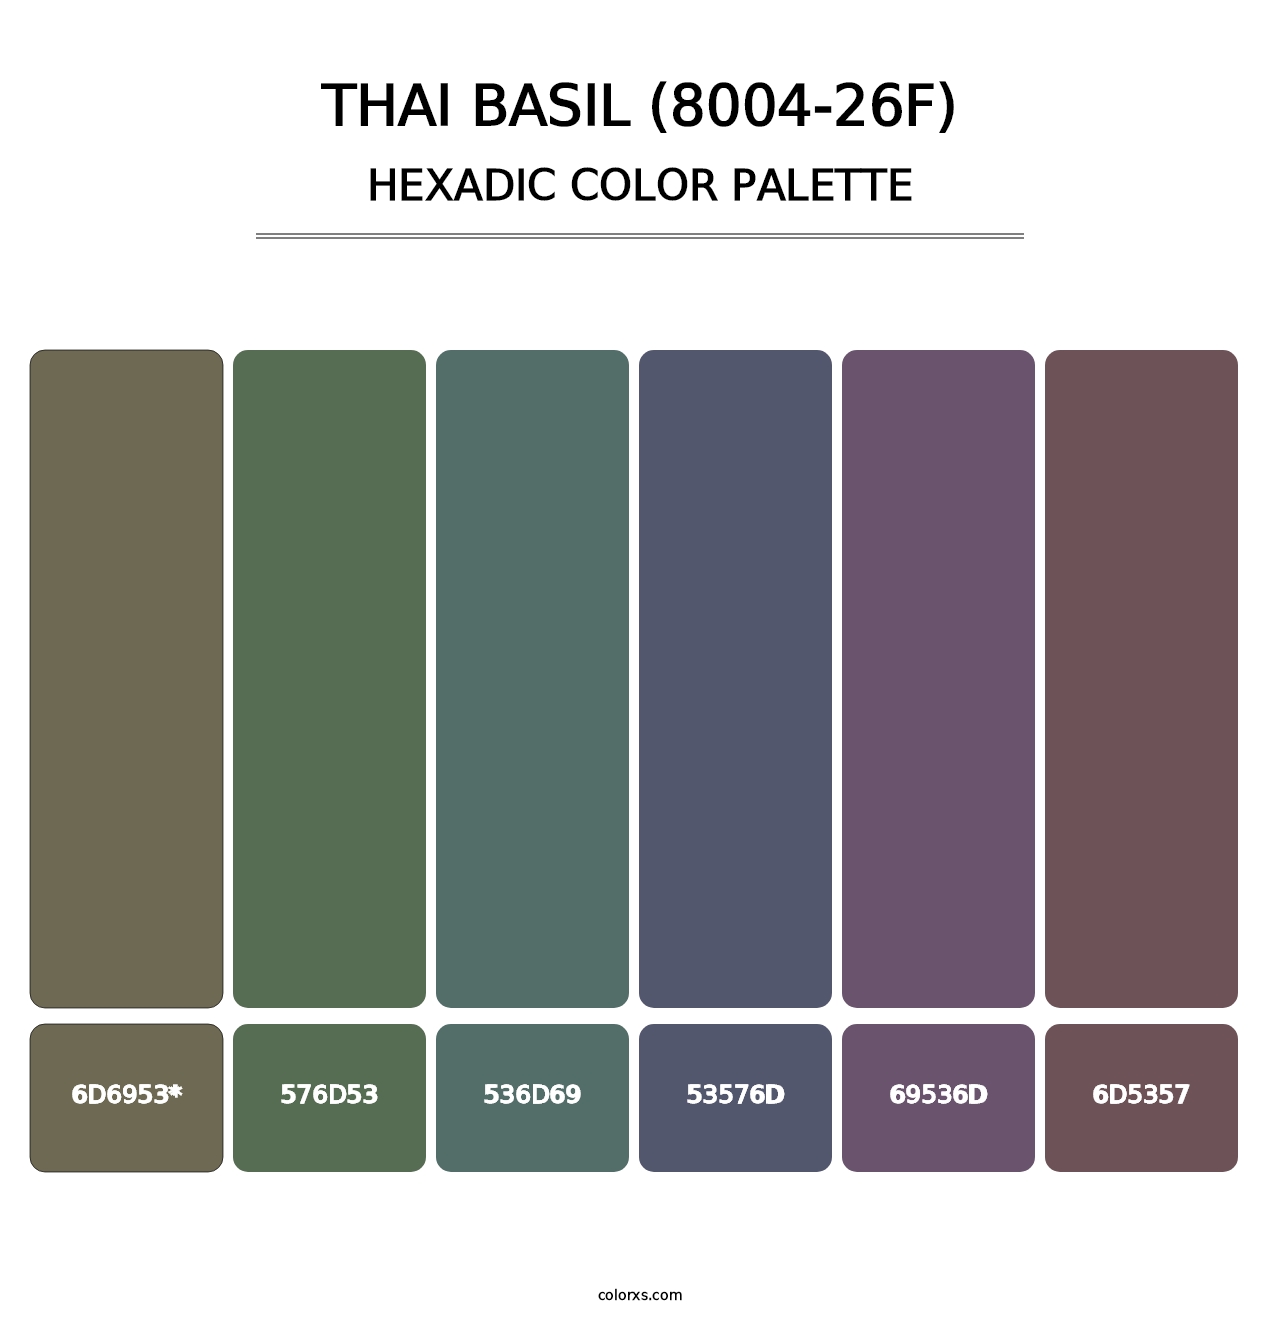 Thai Basil (8004-26F) - Hexadic Color Palette